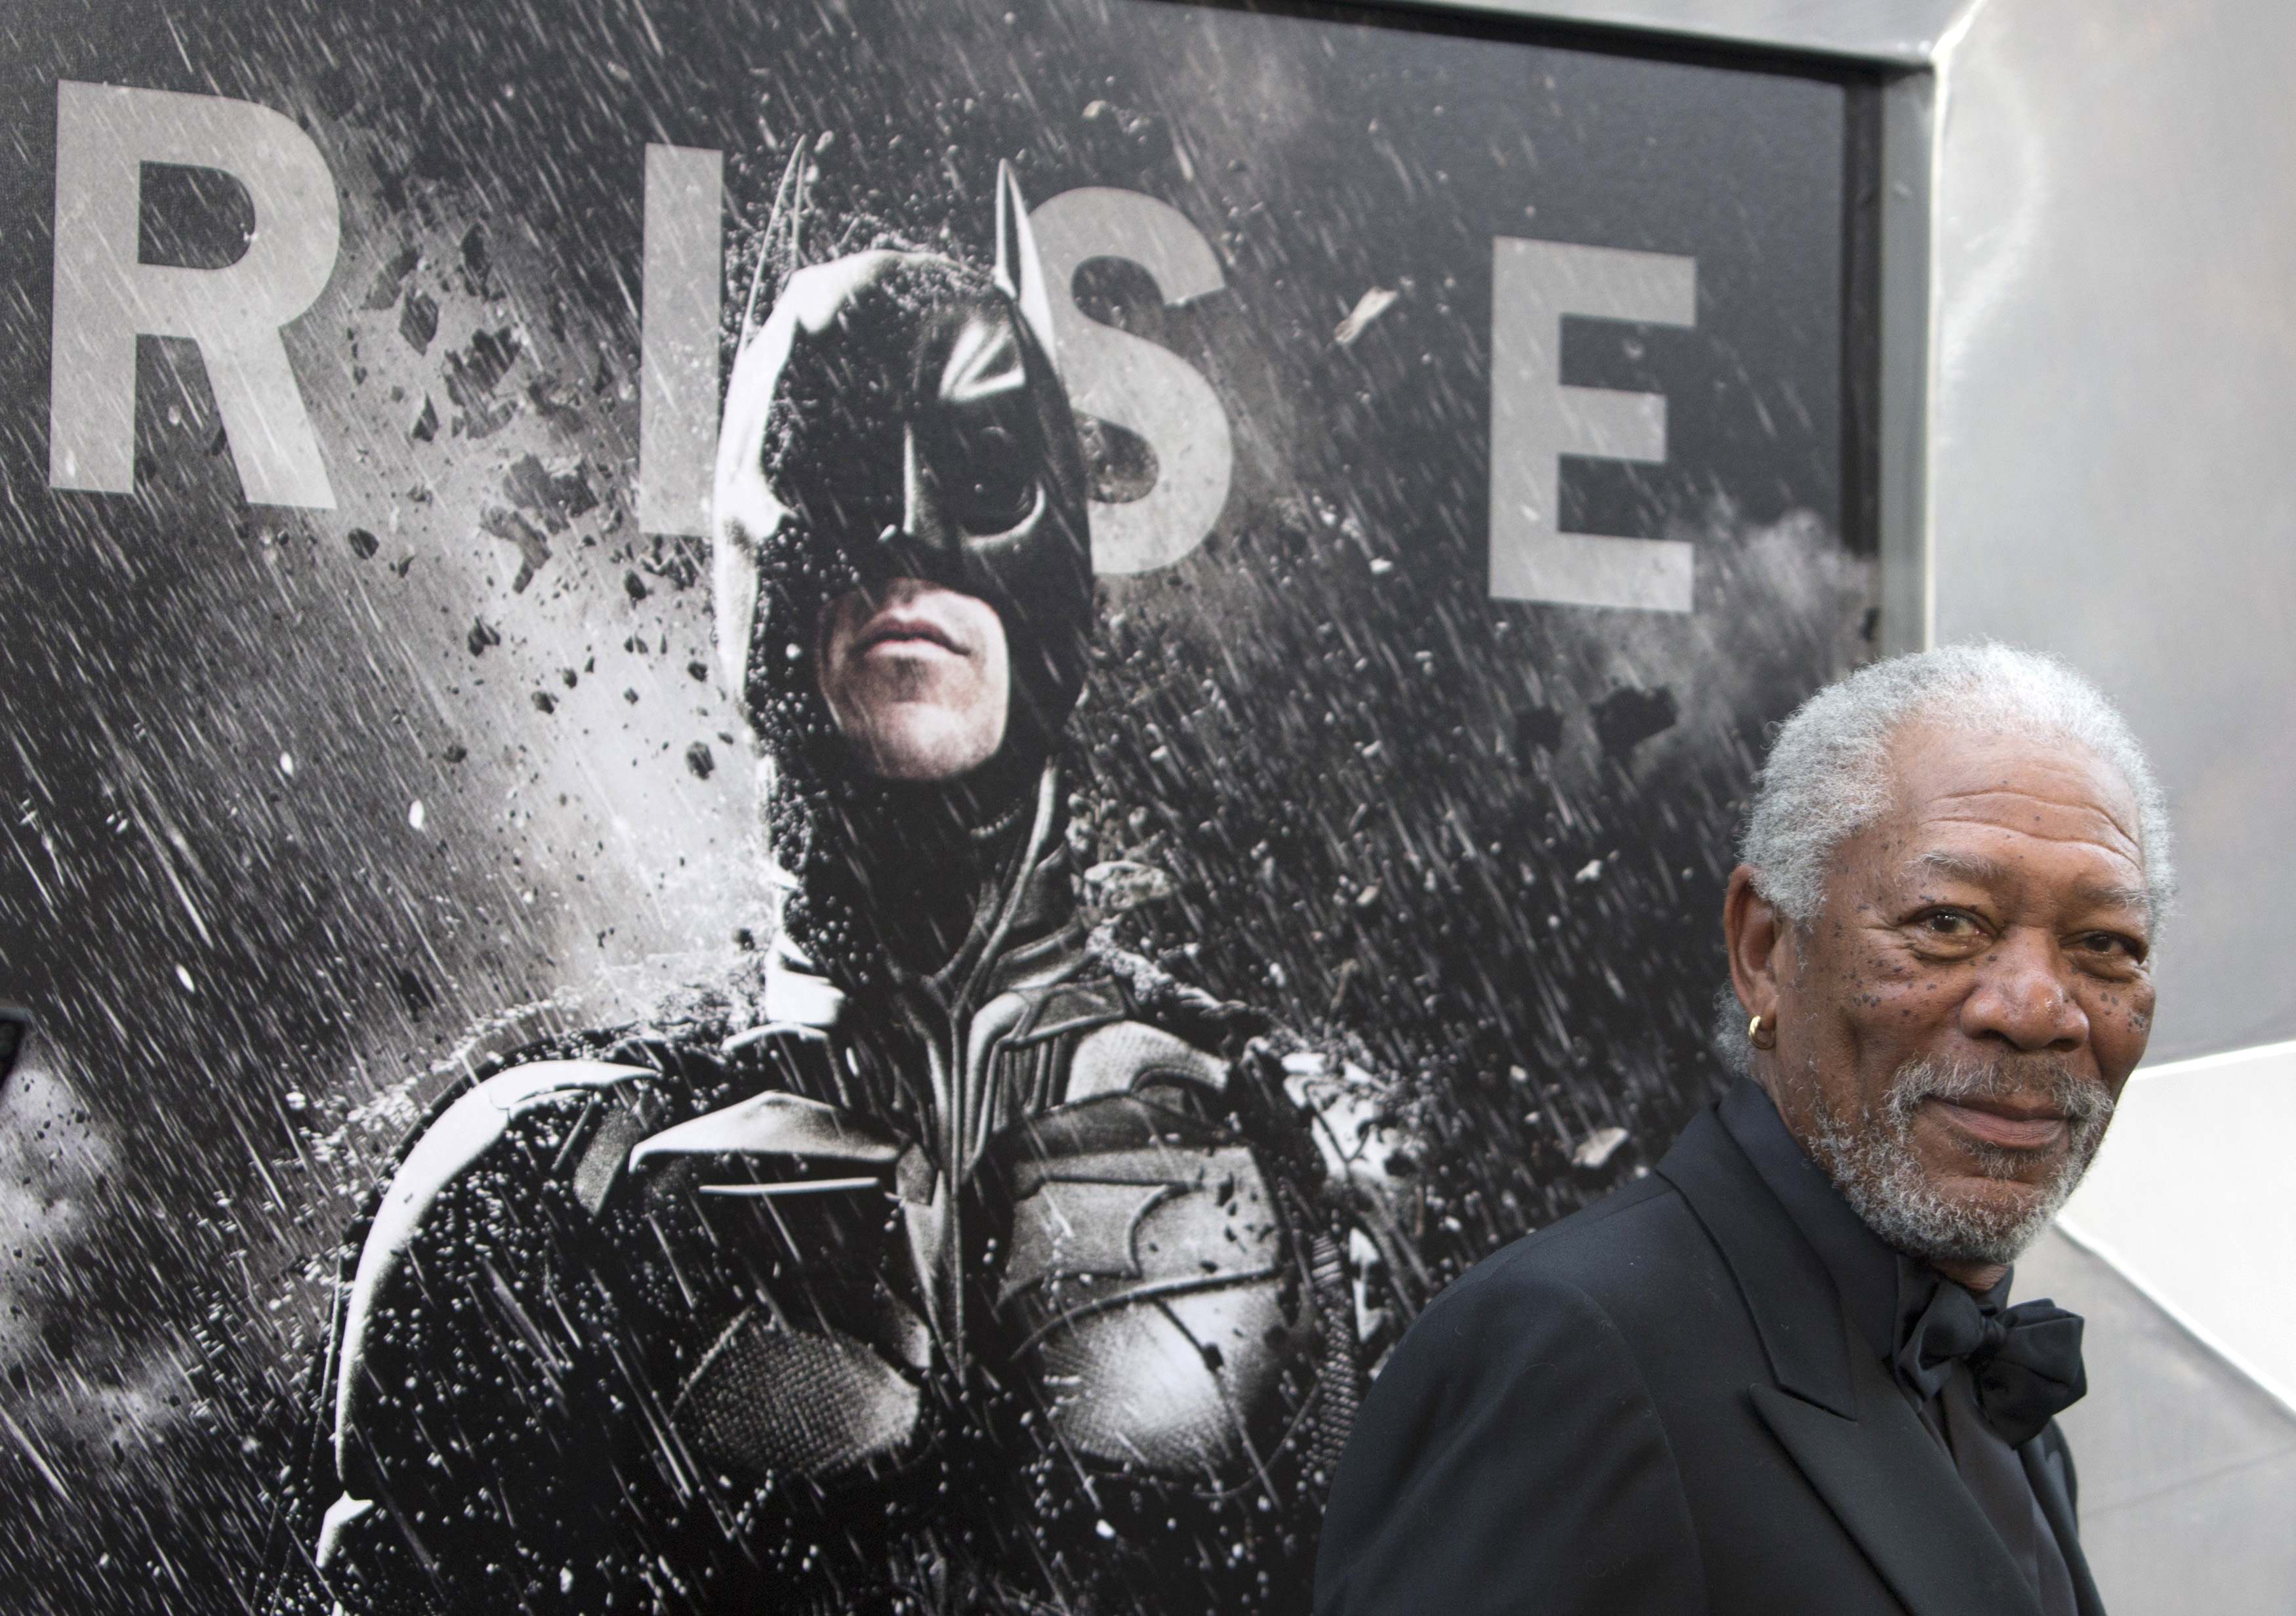 Chris Nolan, Morgan Freeman weigh in on 'Dark Knight' controversies